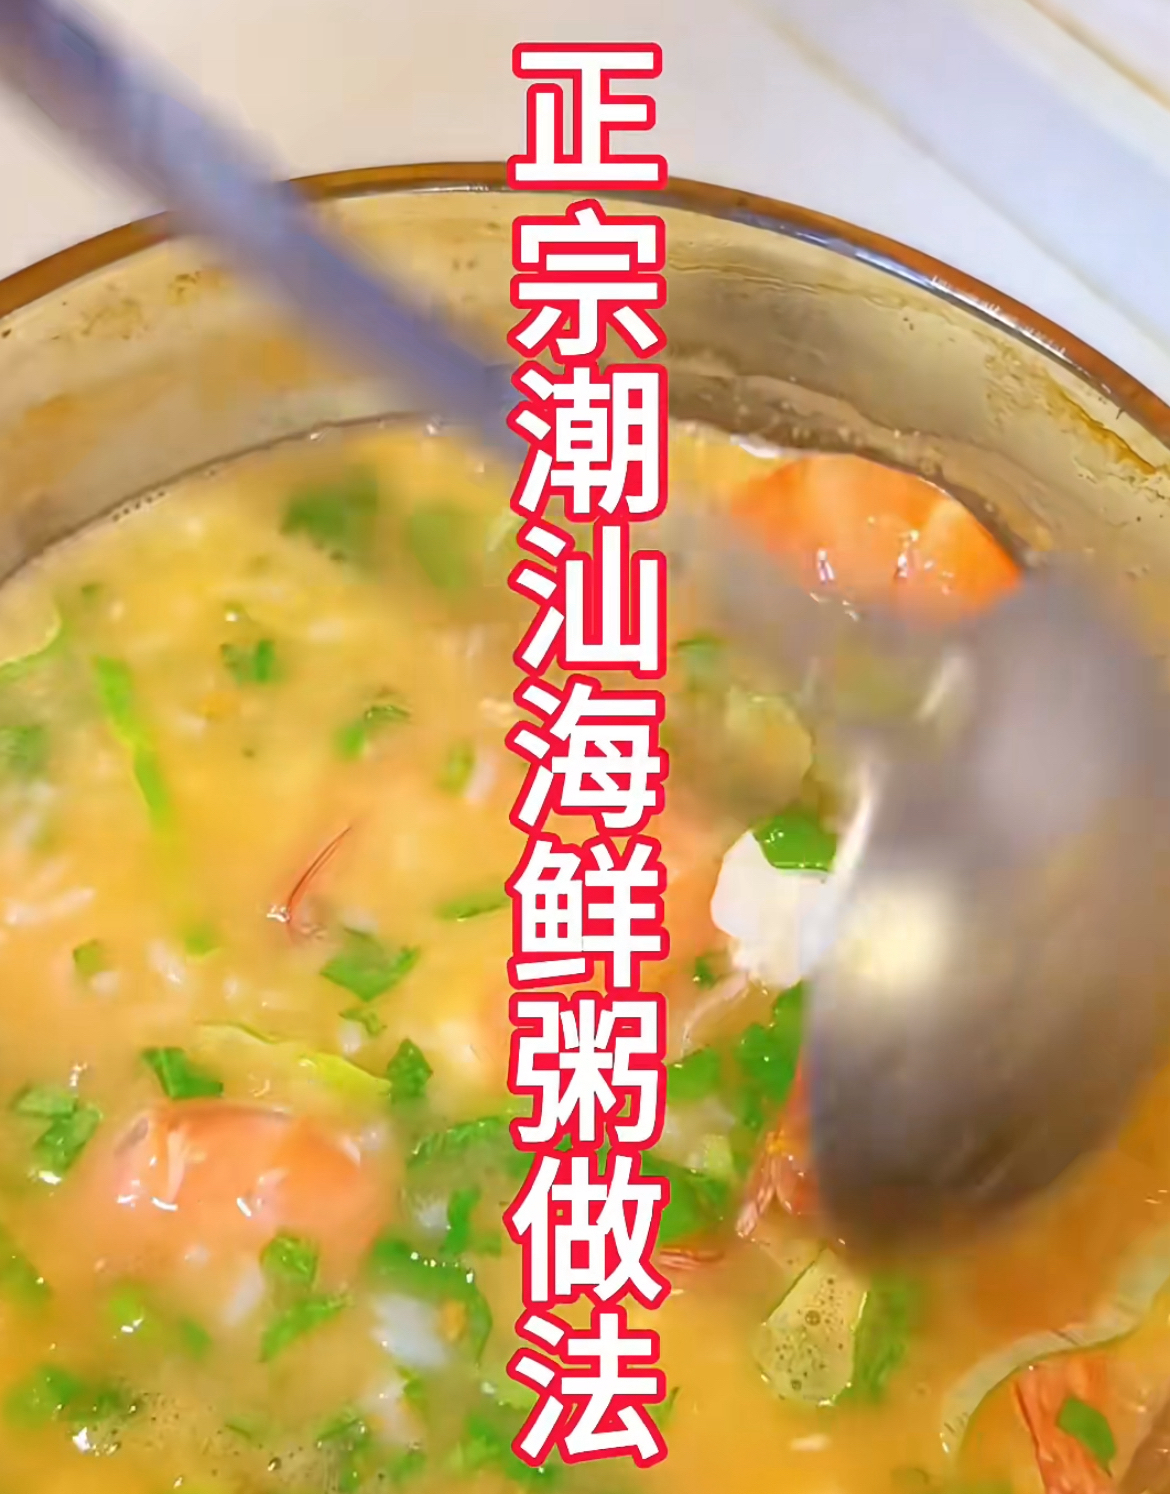 潮汕砂锅粥的做法